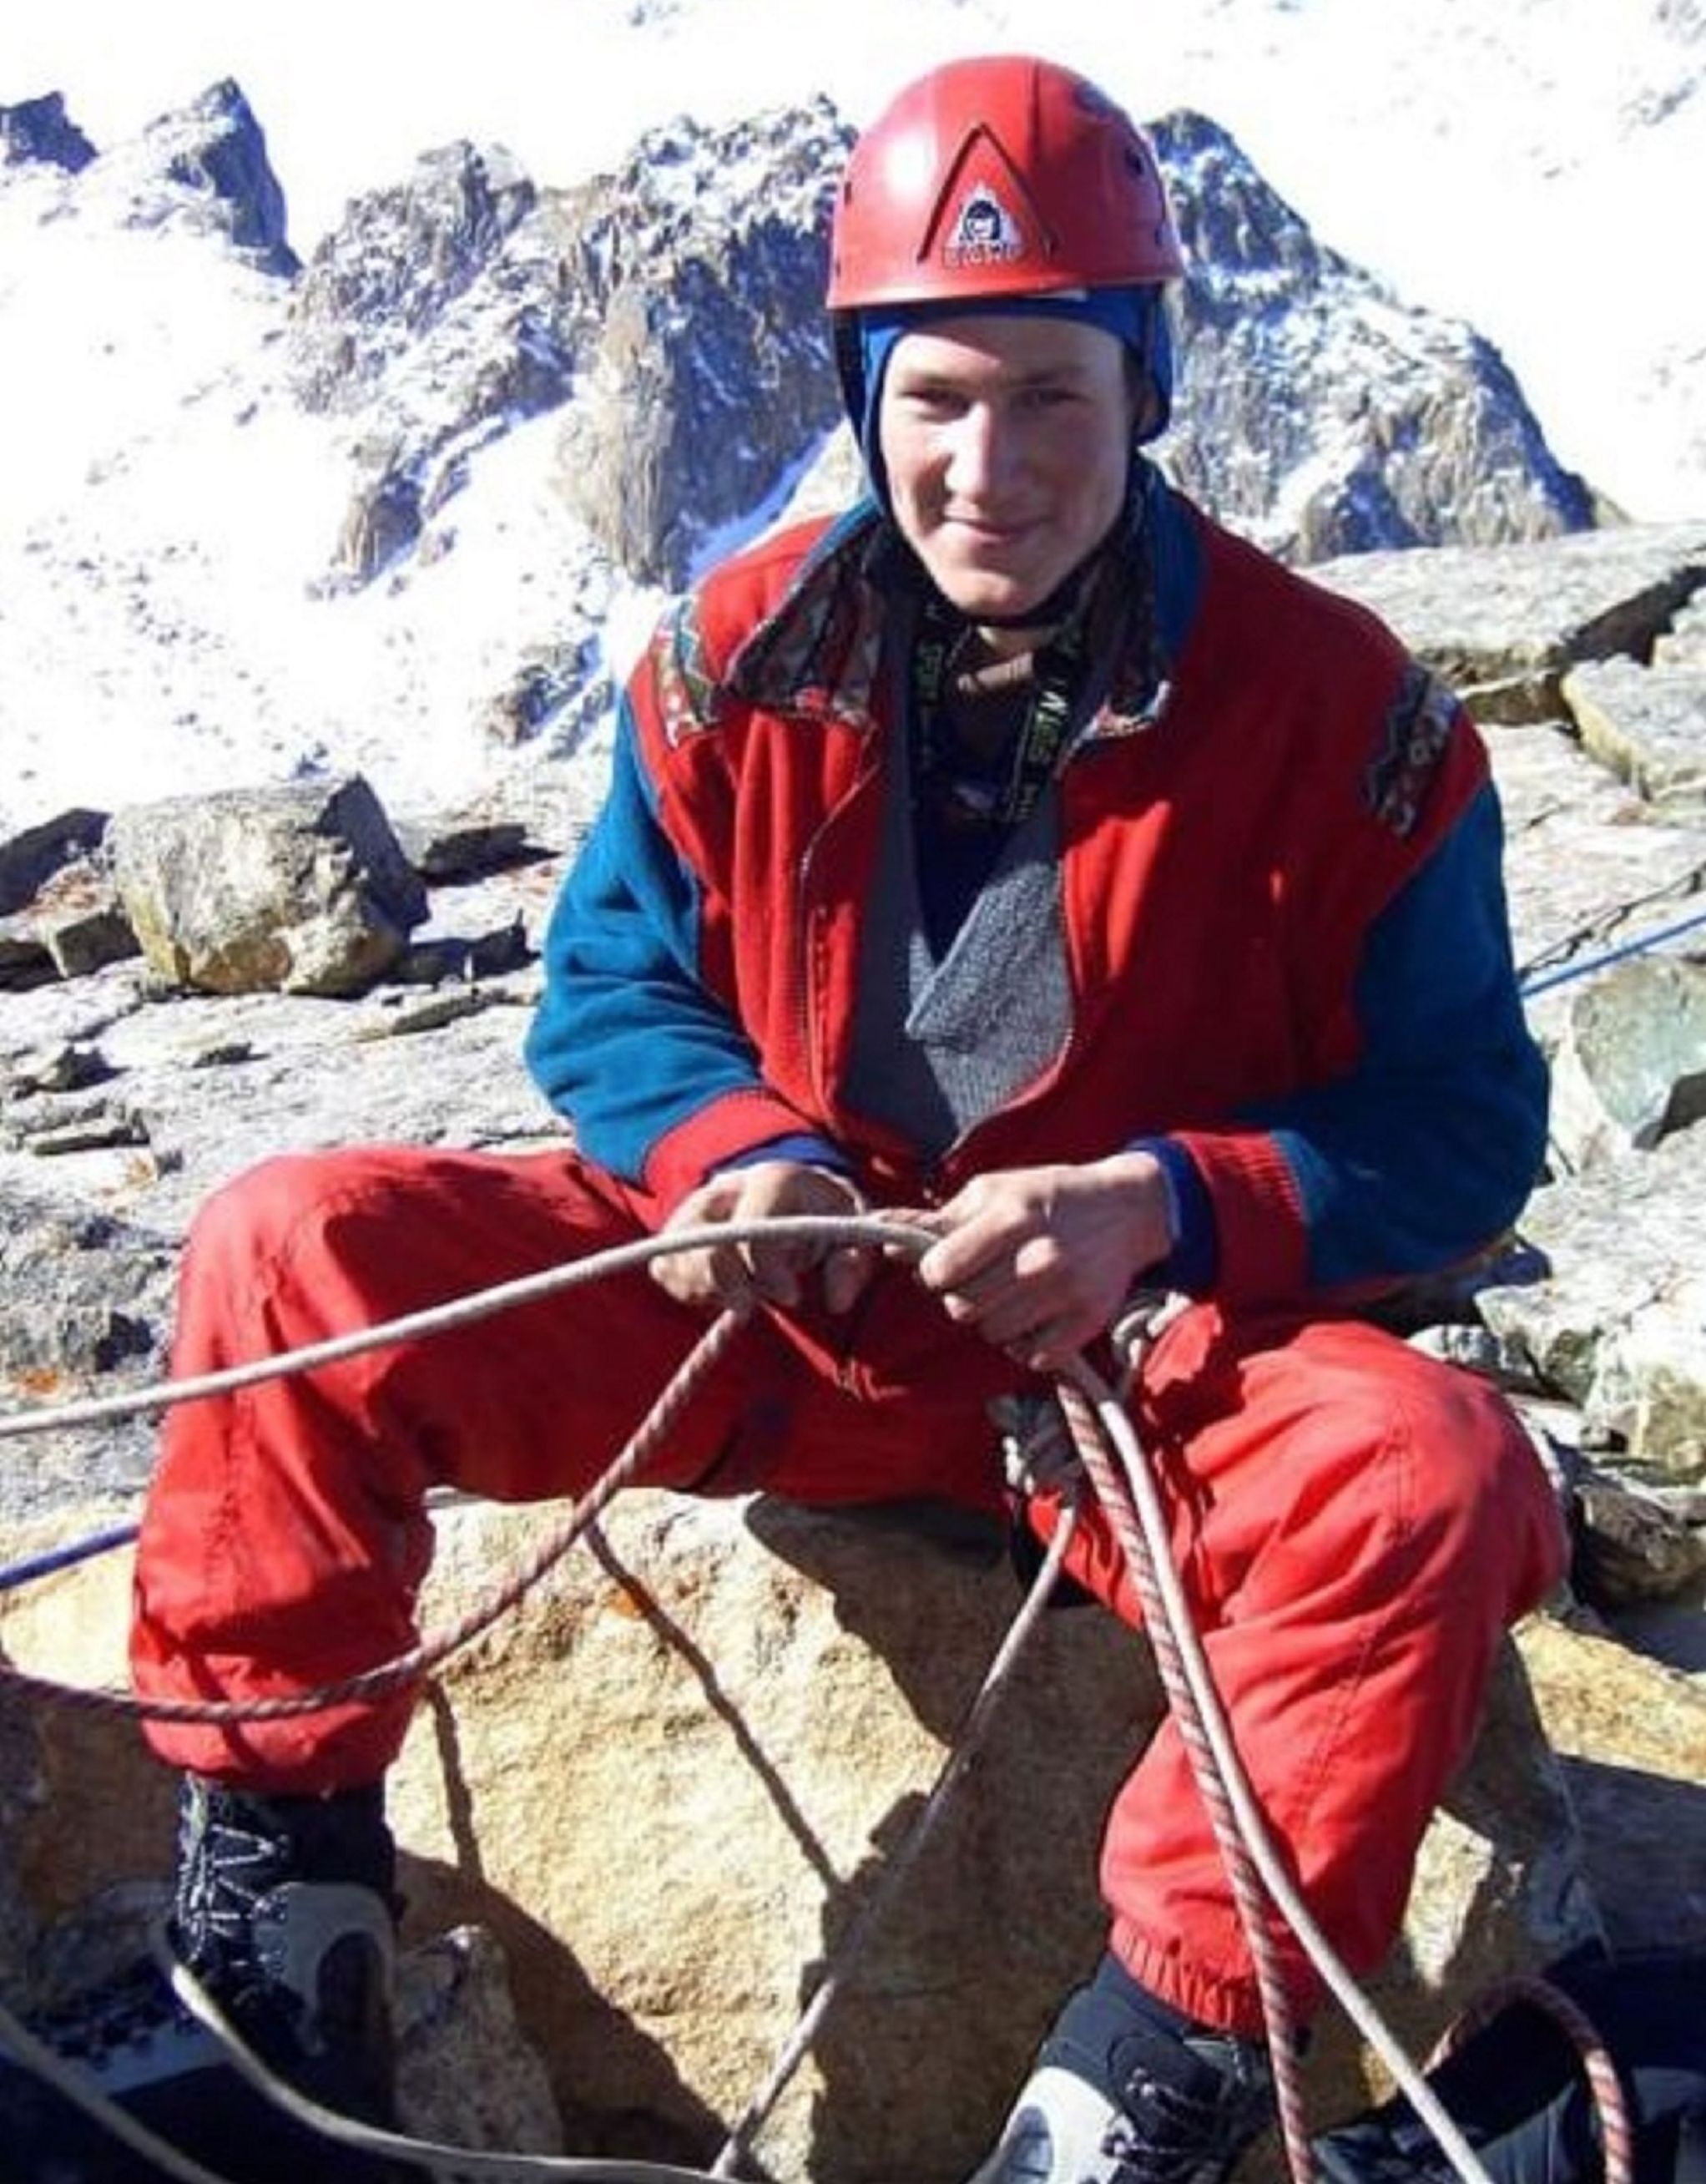 Спасатель аварийно-спасательного отряда Службы спасения города Алматы Игорь Клунный на тренировке по альпинистской подготовке